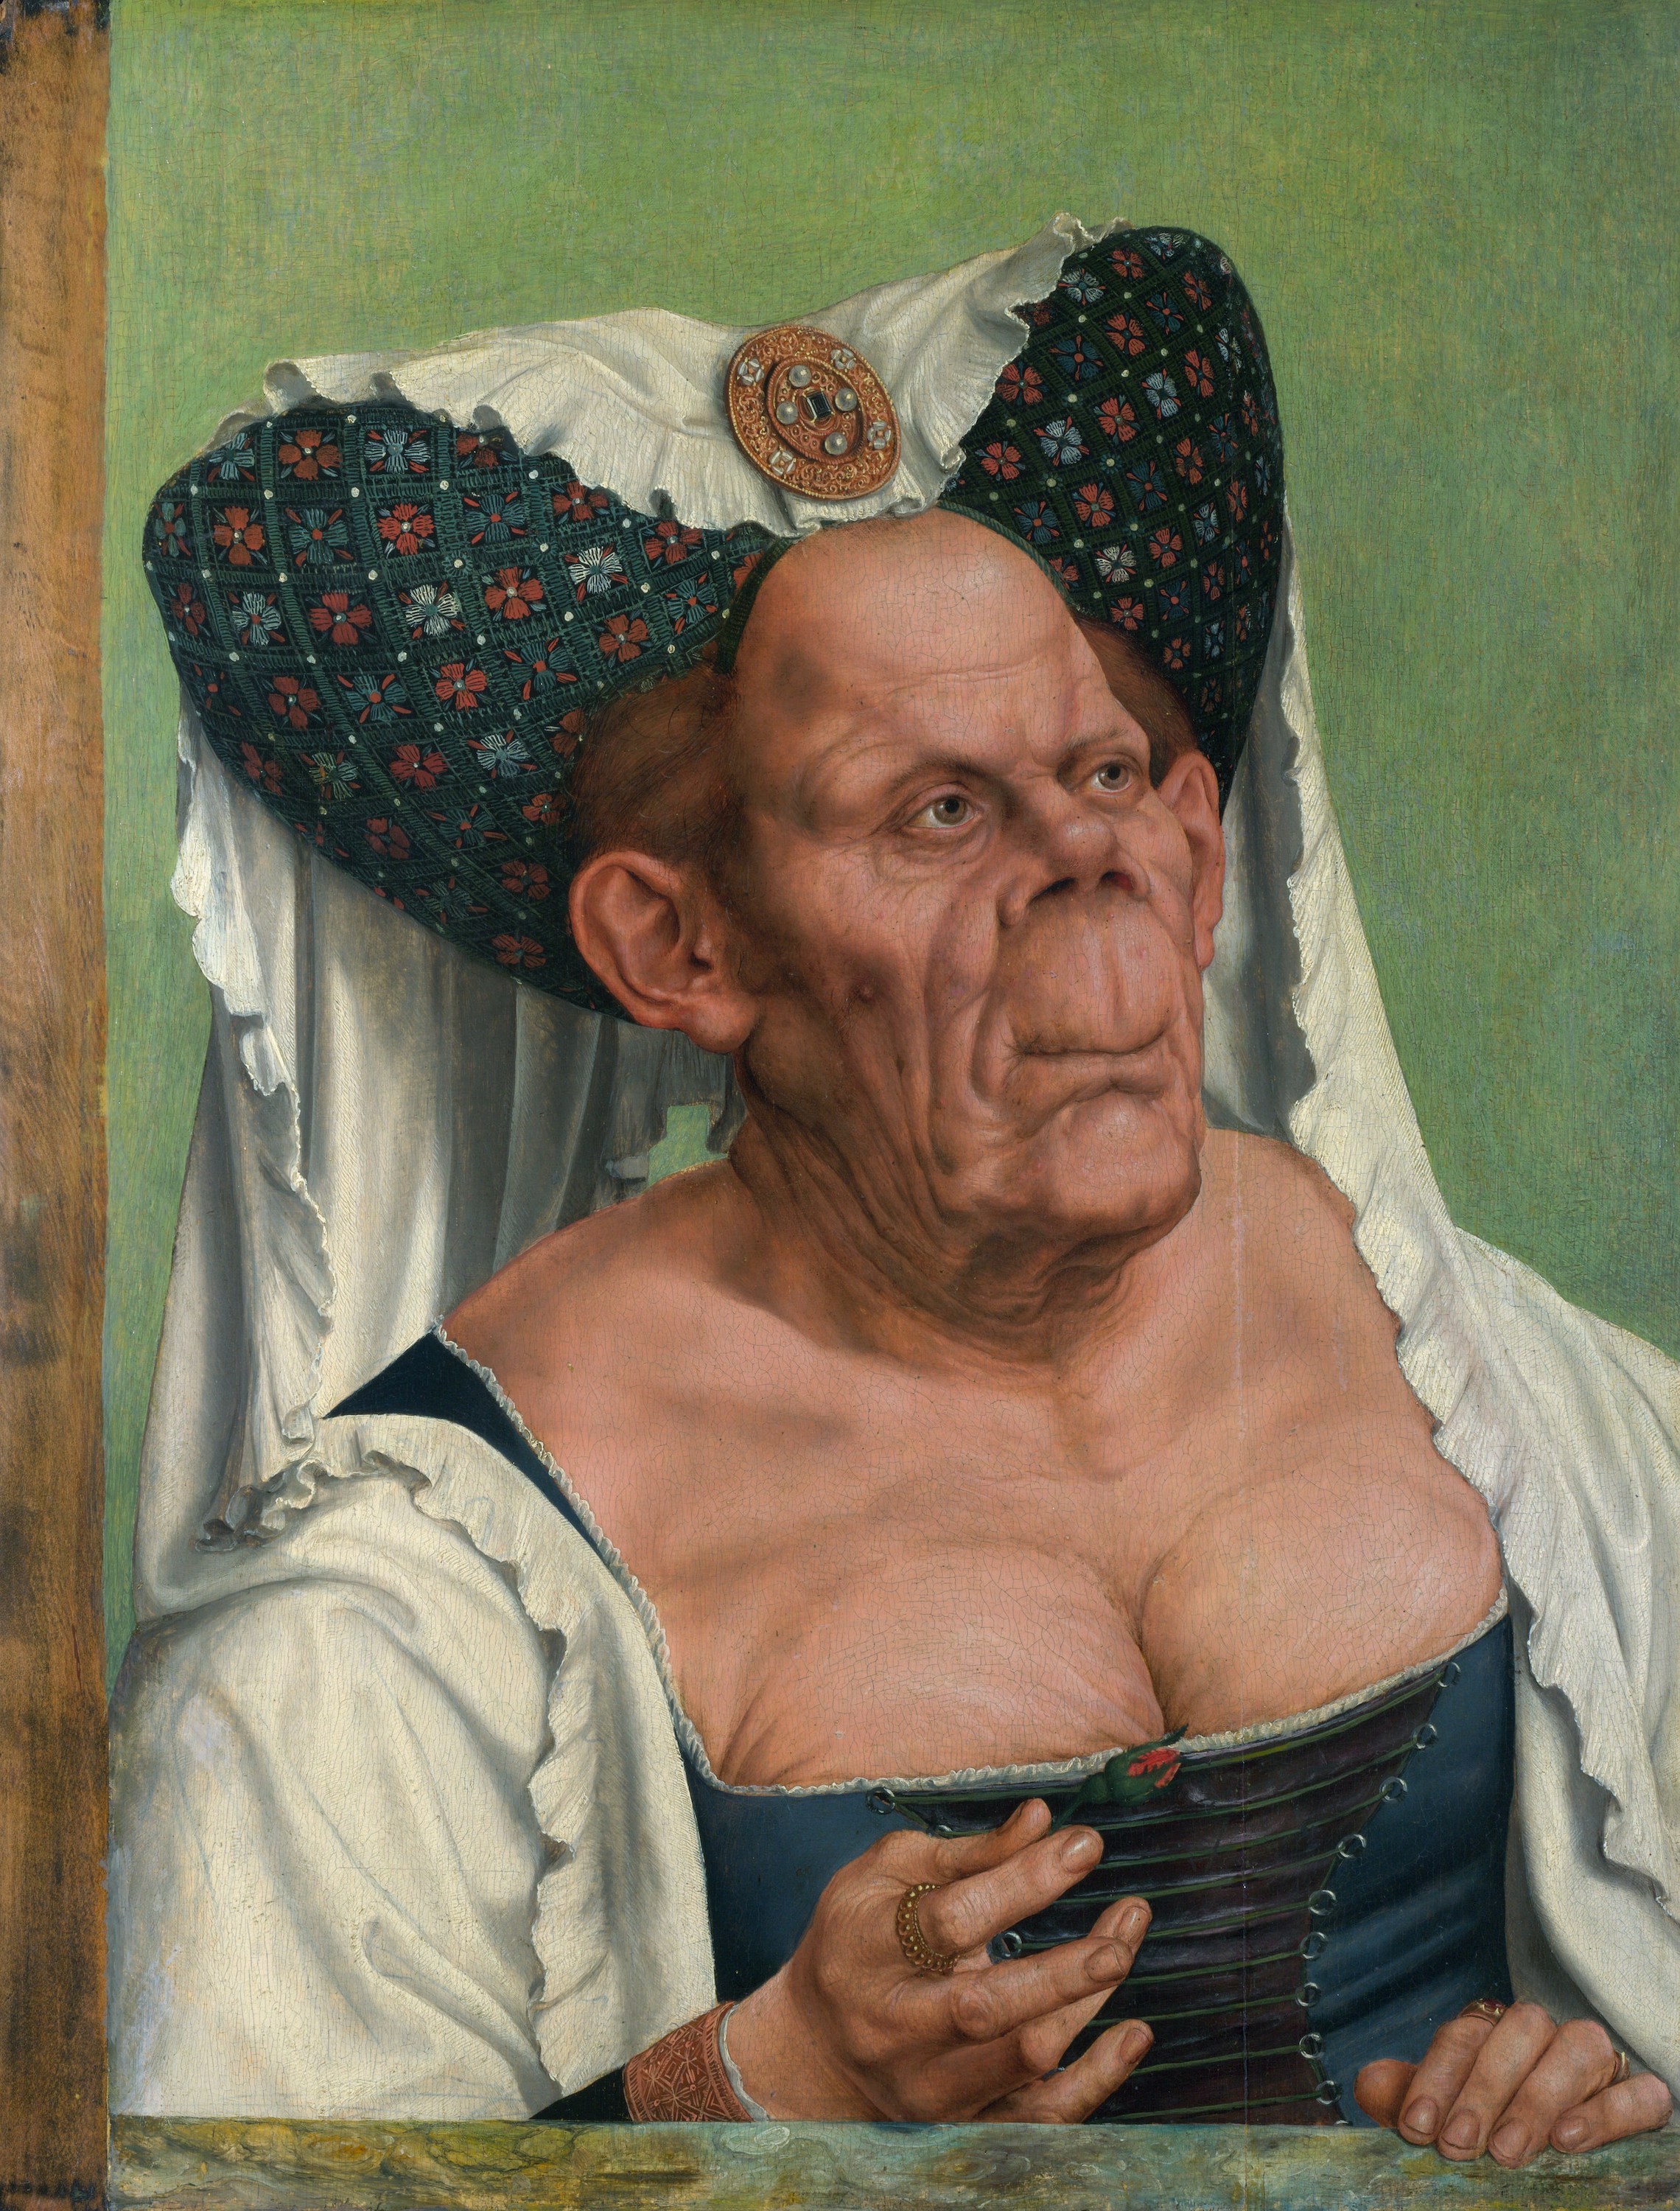 La duquesa fea by Quentin Metsys - circa 1513 - 64.2 × 45.4 cm Galería Nacional